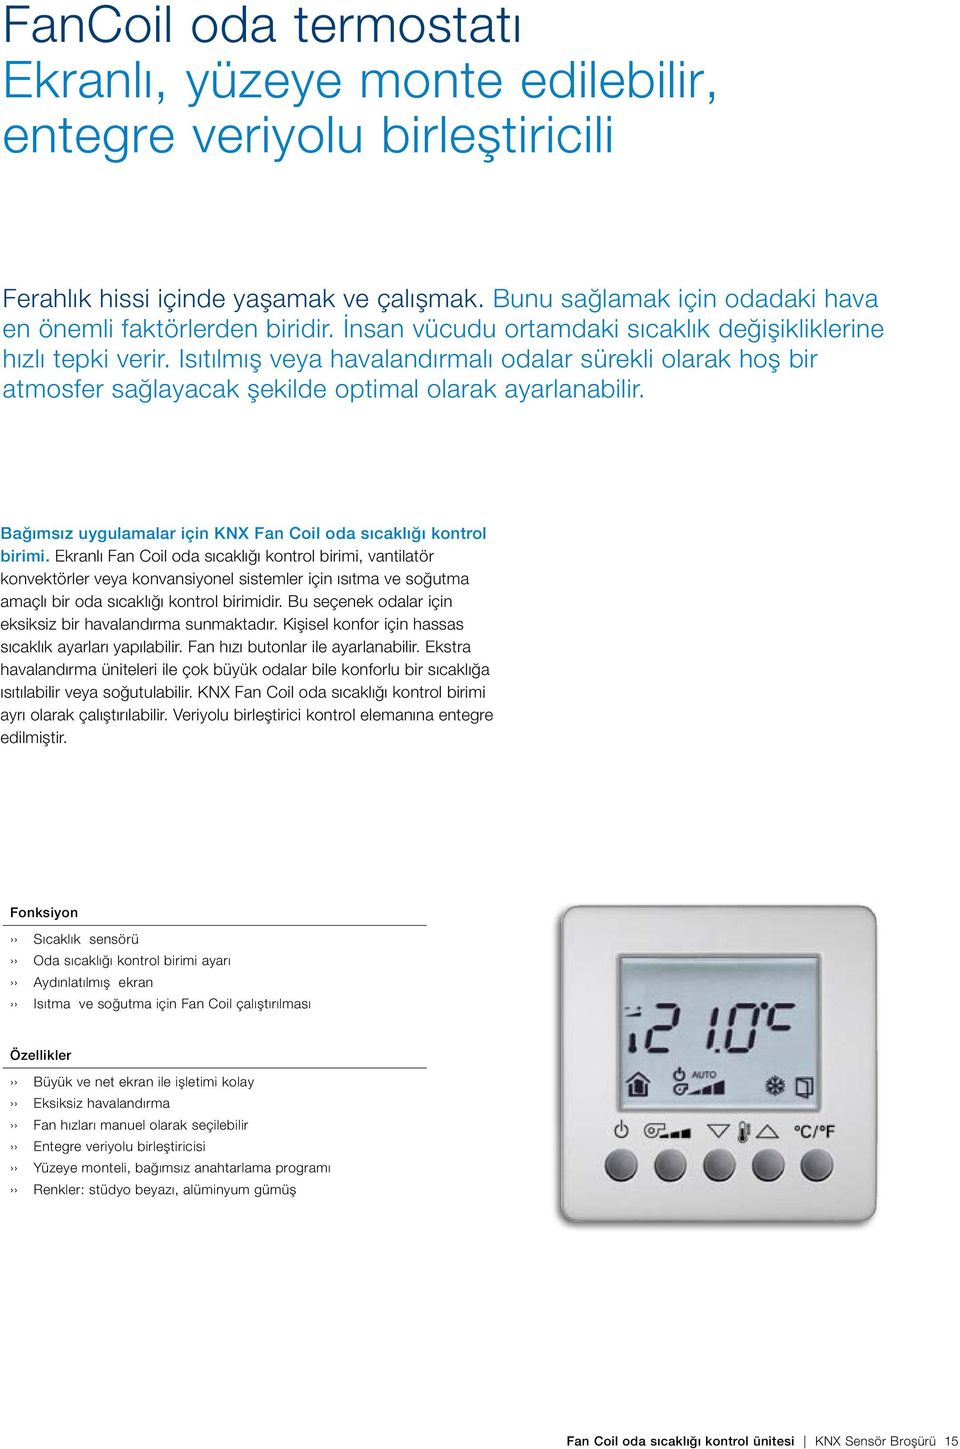 Bağımsız uygulamalar için KNX Fan Coil oda sıcaklığı kontrol birimi.